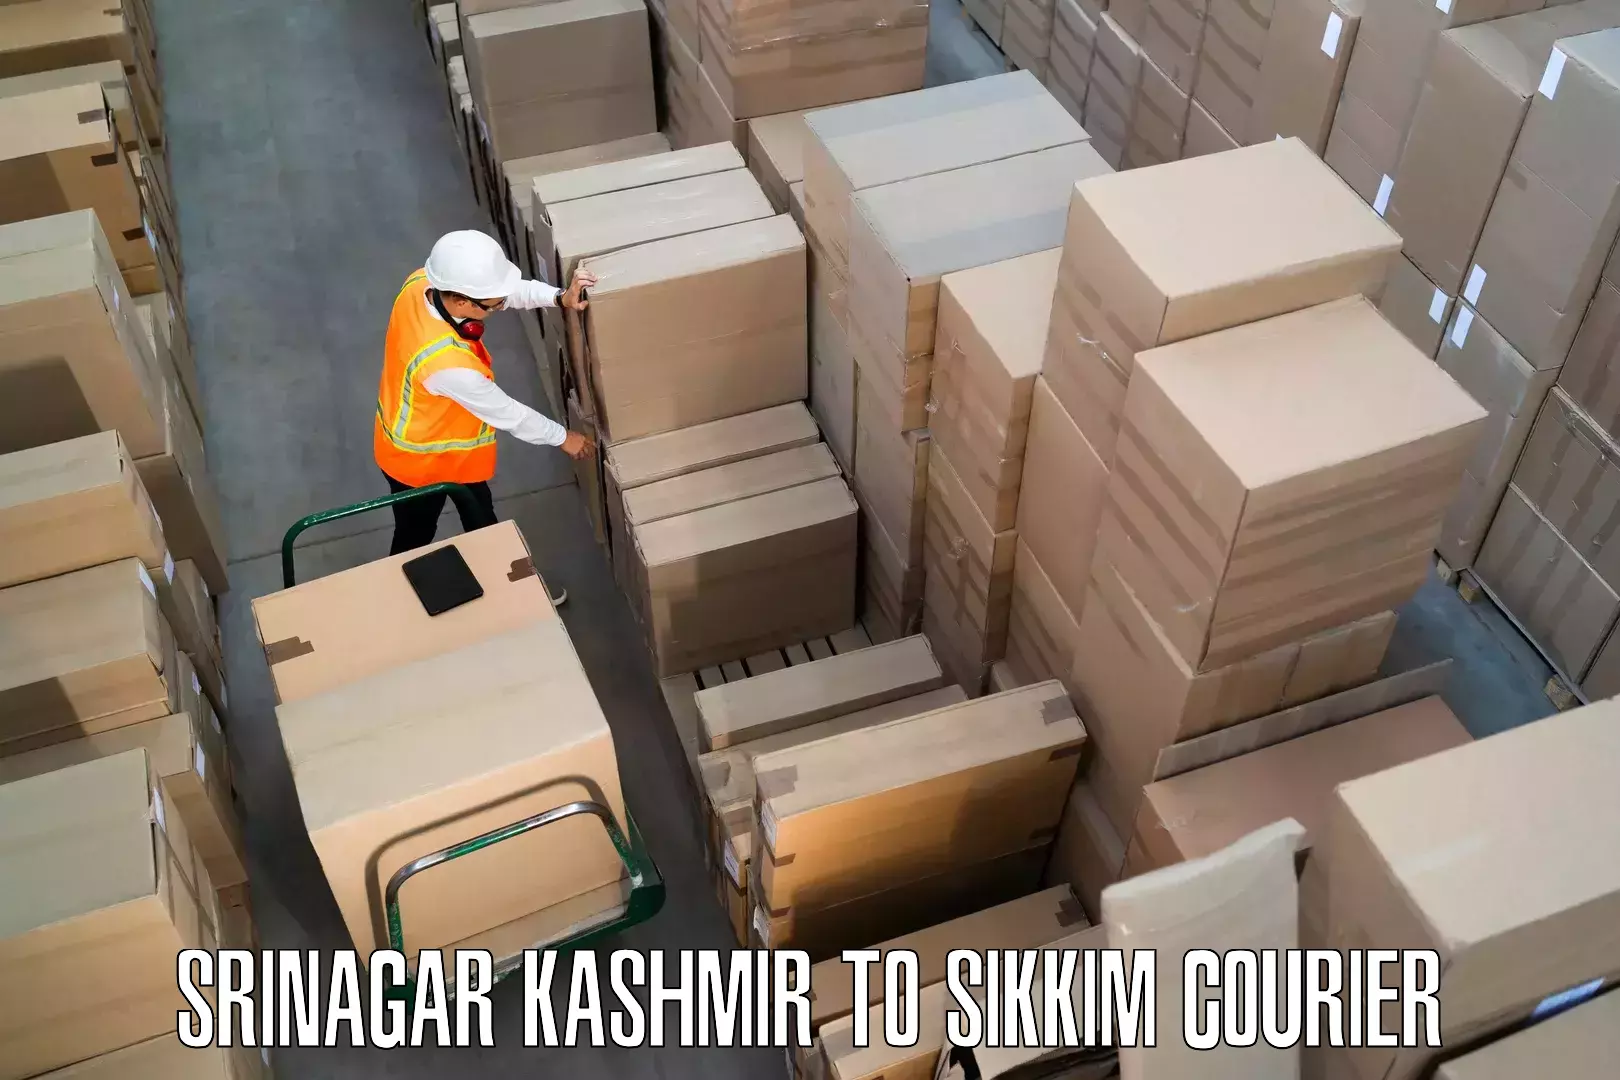 Quality moving company Srinagar Kashmir to Pelling